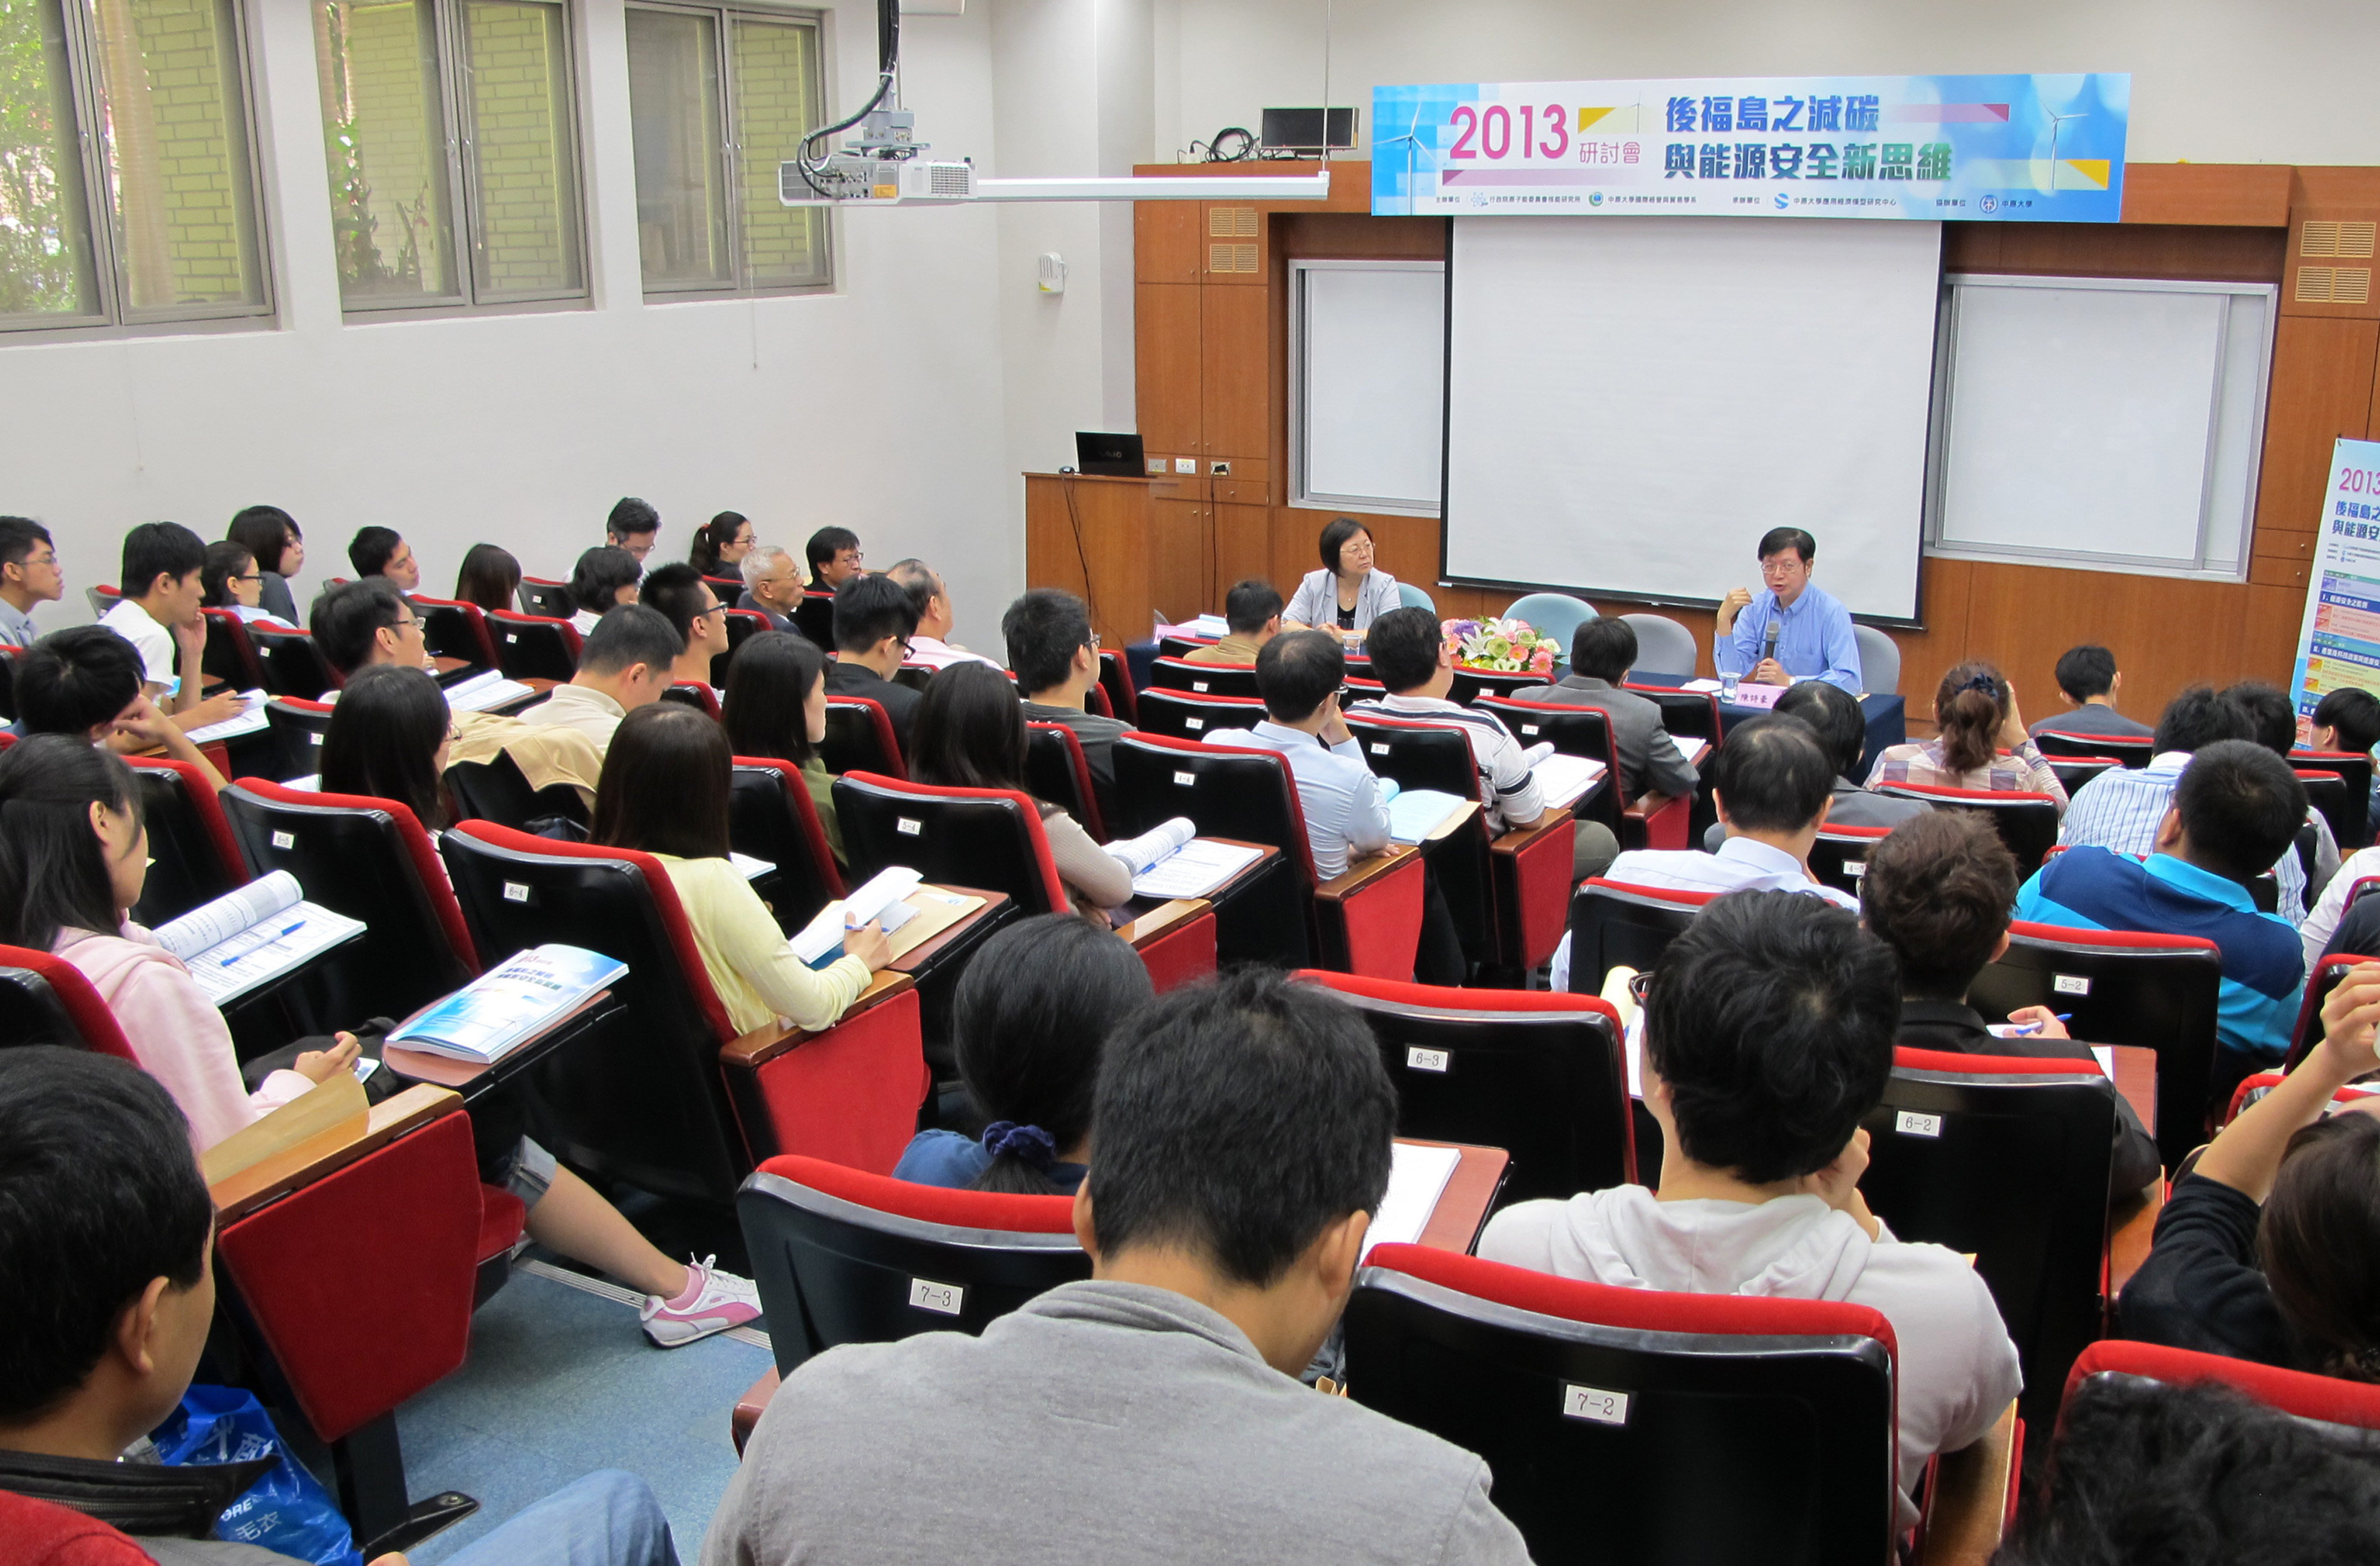 2013年後福島之減碳與能源安全新思維研討會